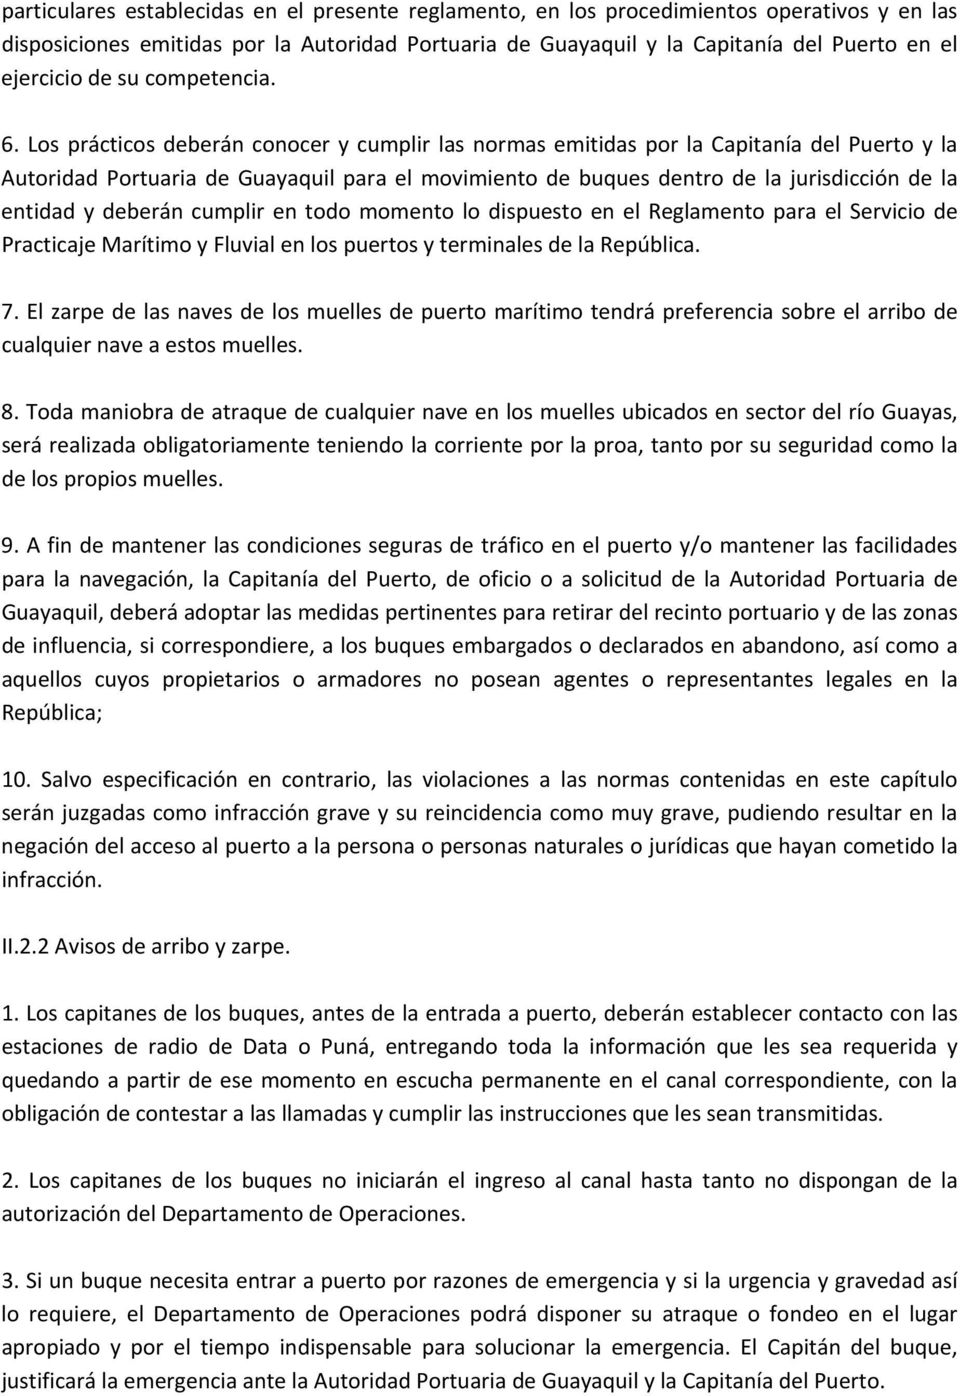 Los prácticos deberán conocer y cumplir las normas emitidas por la Capitanía del Puerto y la Autoridad Portuaria de Guayaquil para el movimiento de buques dentro de la jurisdicción de la entidad y